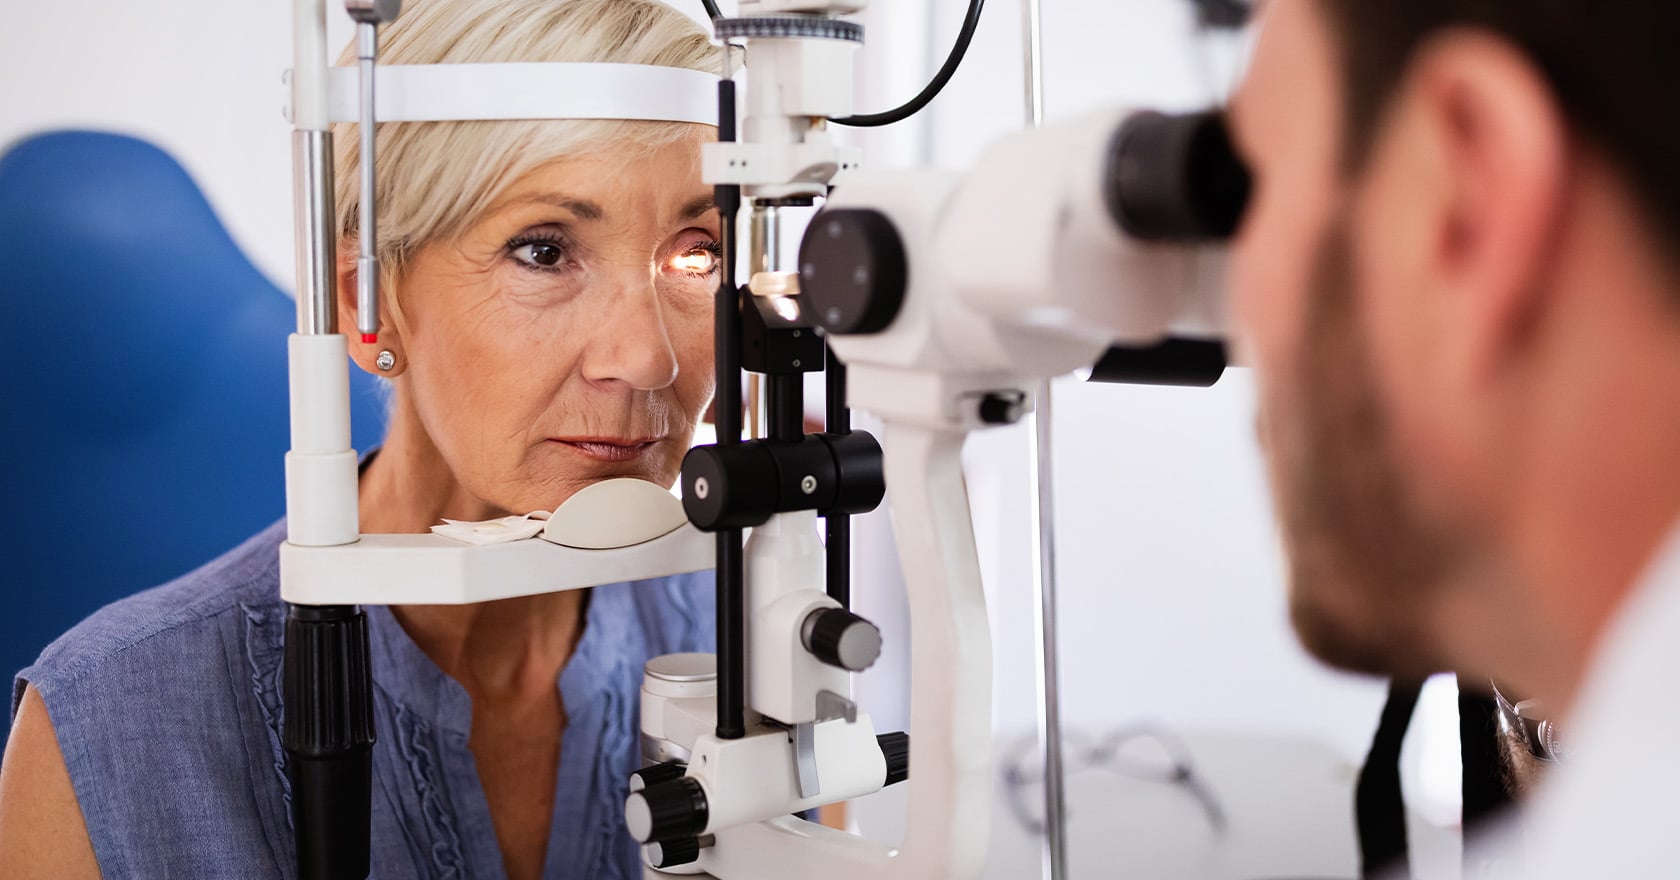 Déroulé de la consultation : cabinet d'ophtalmologie | ophtalmologue chirurgien | Dr Berthon | Lyon